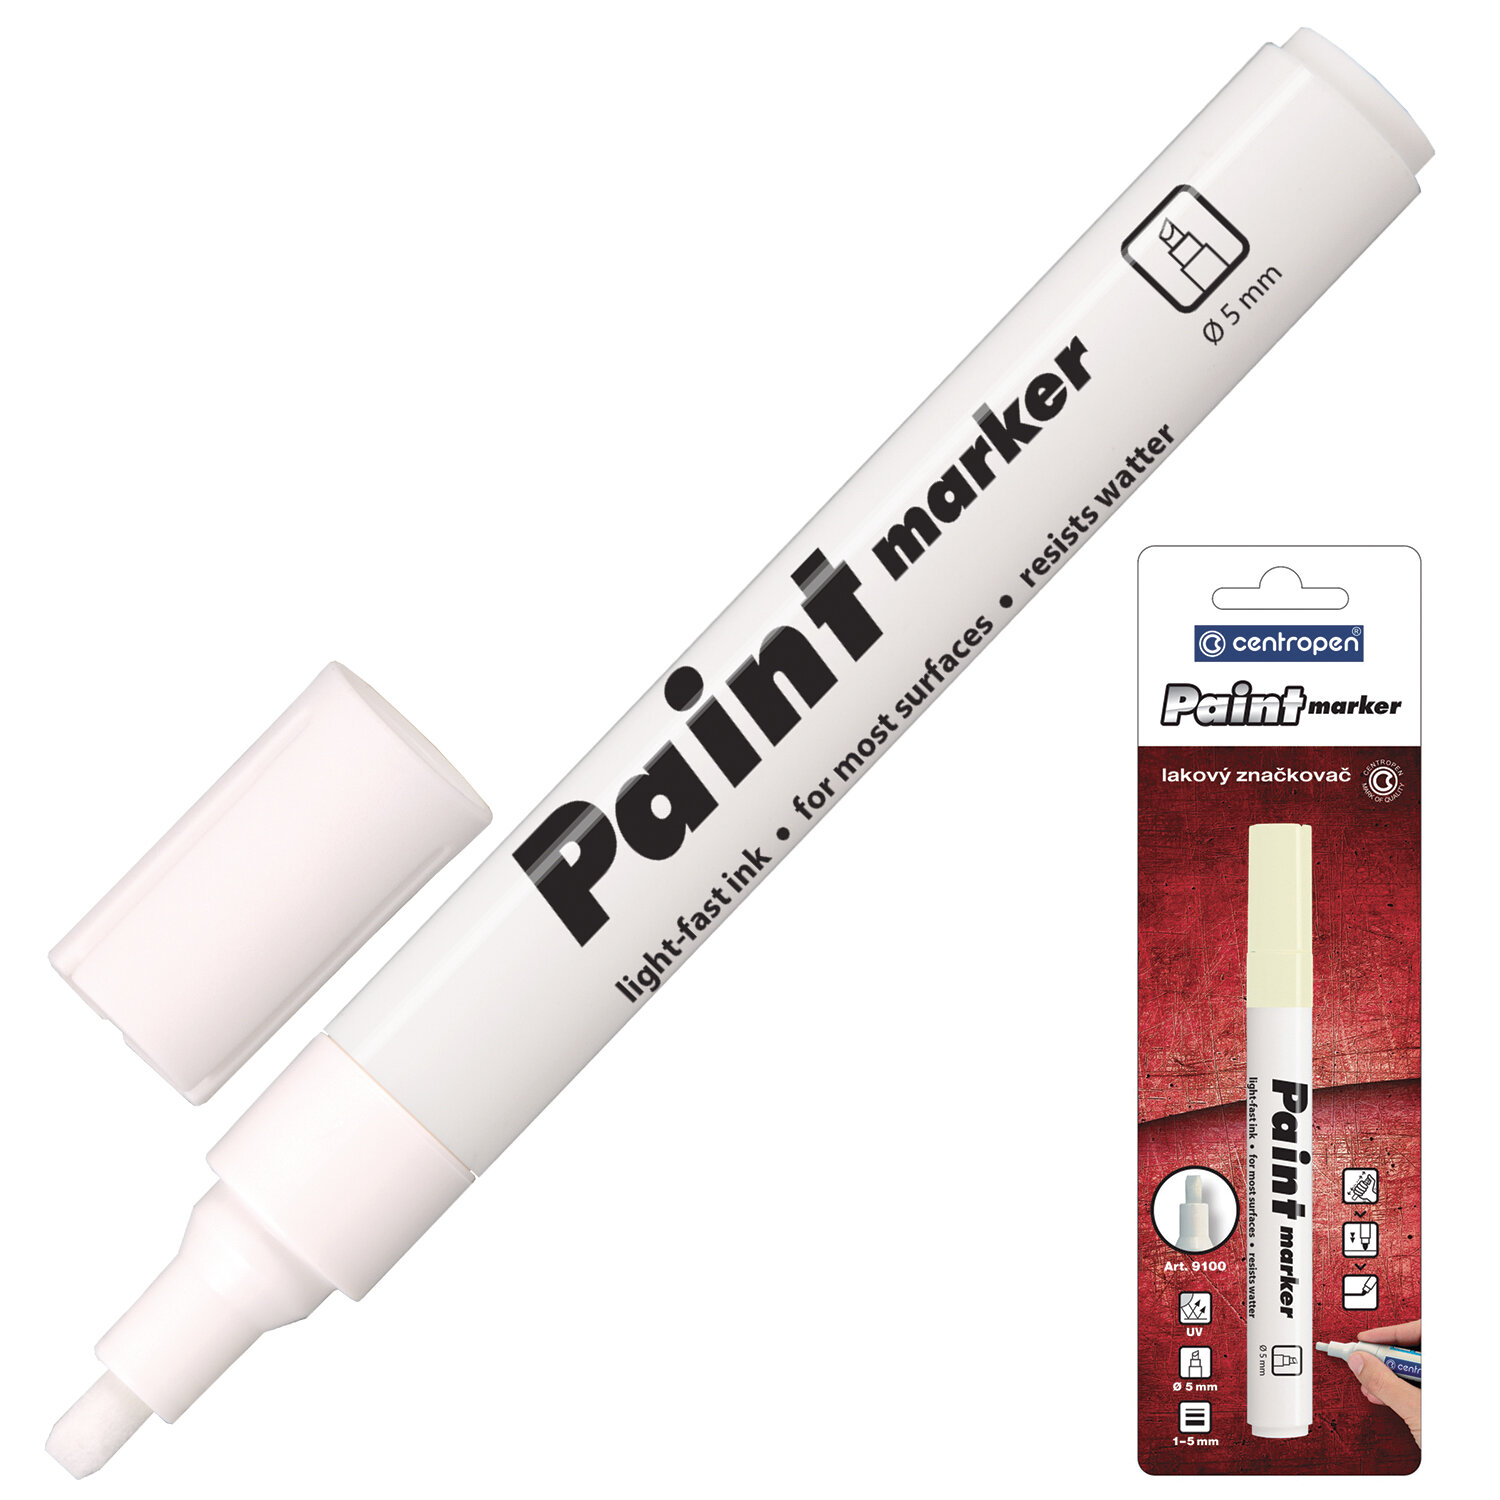 -  (paint marker)  CENTROPEN,  , 1-5 , 9100, 5 9100 9900